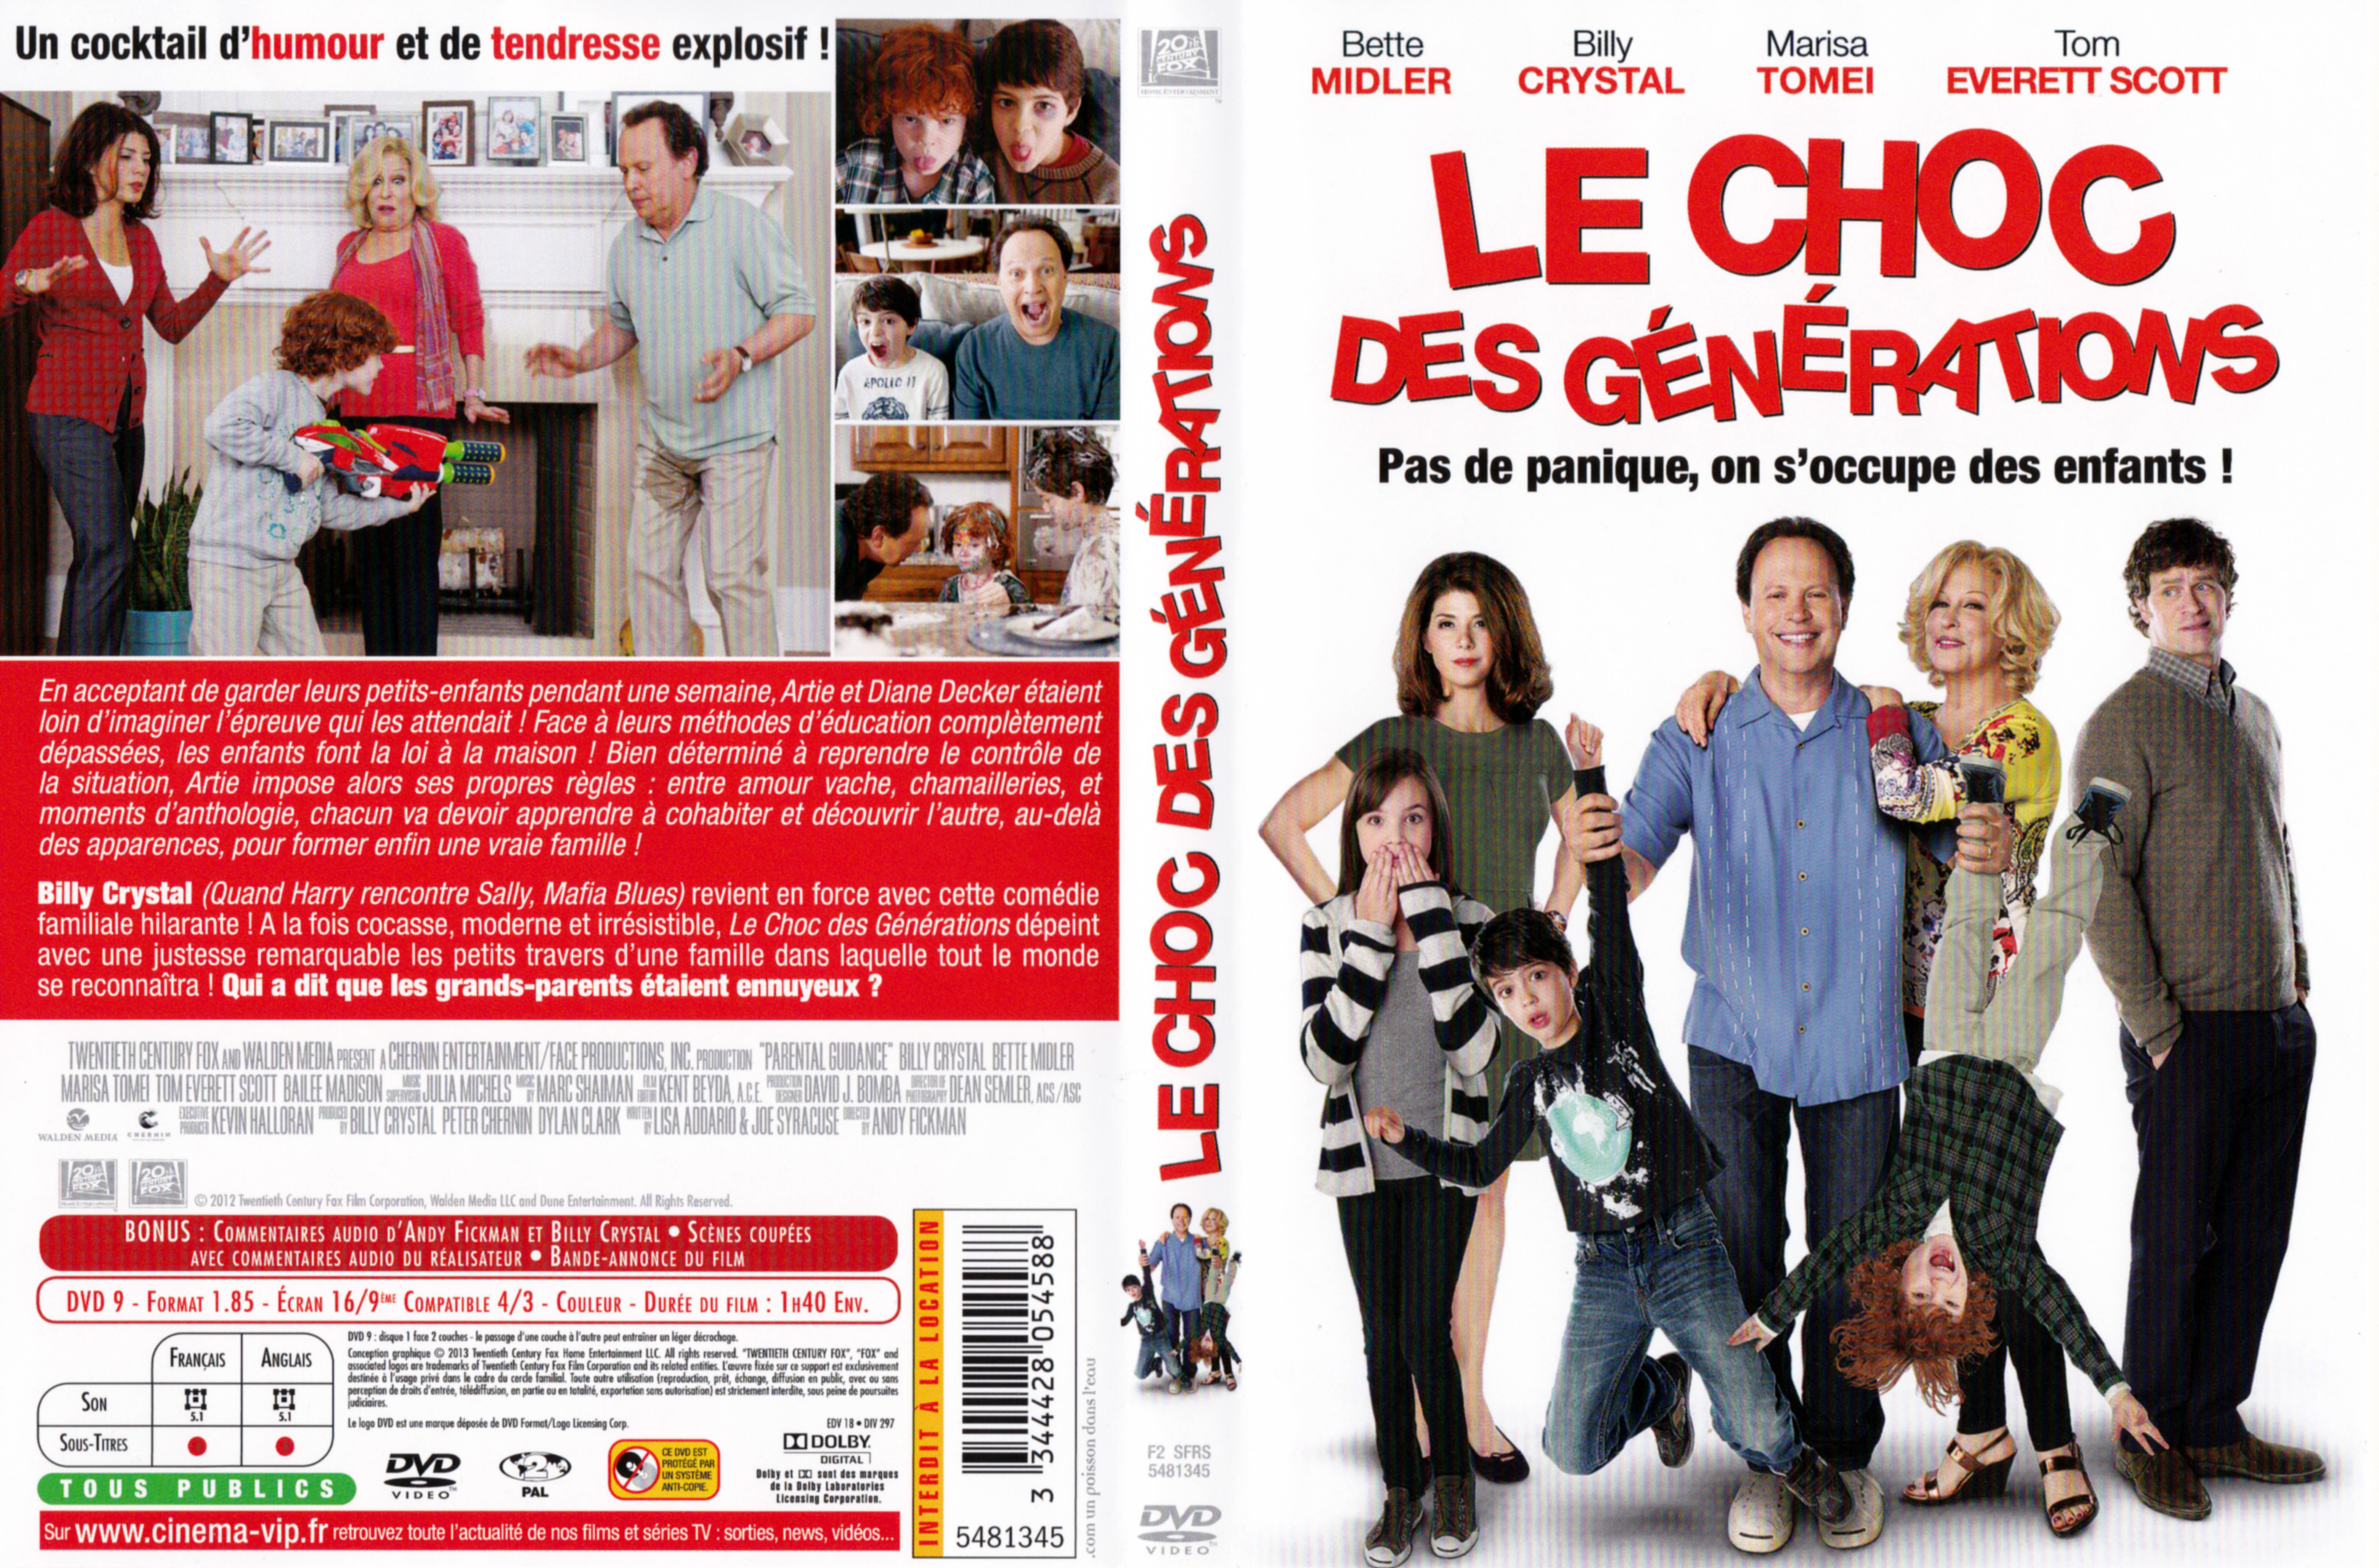 Jaquette DVD Le Choc des gnrations